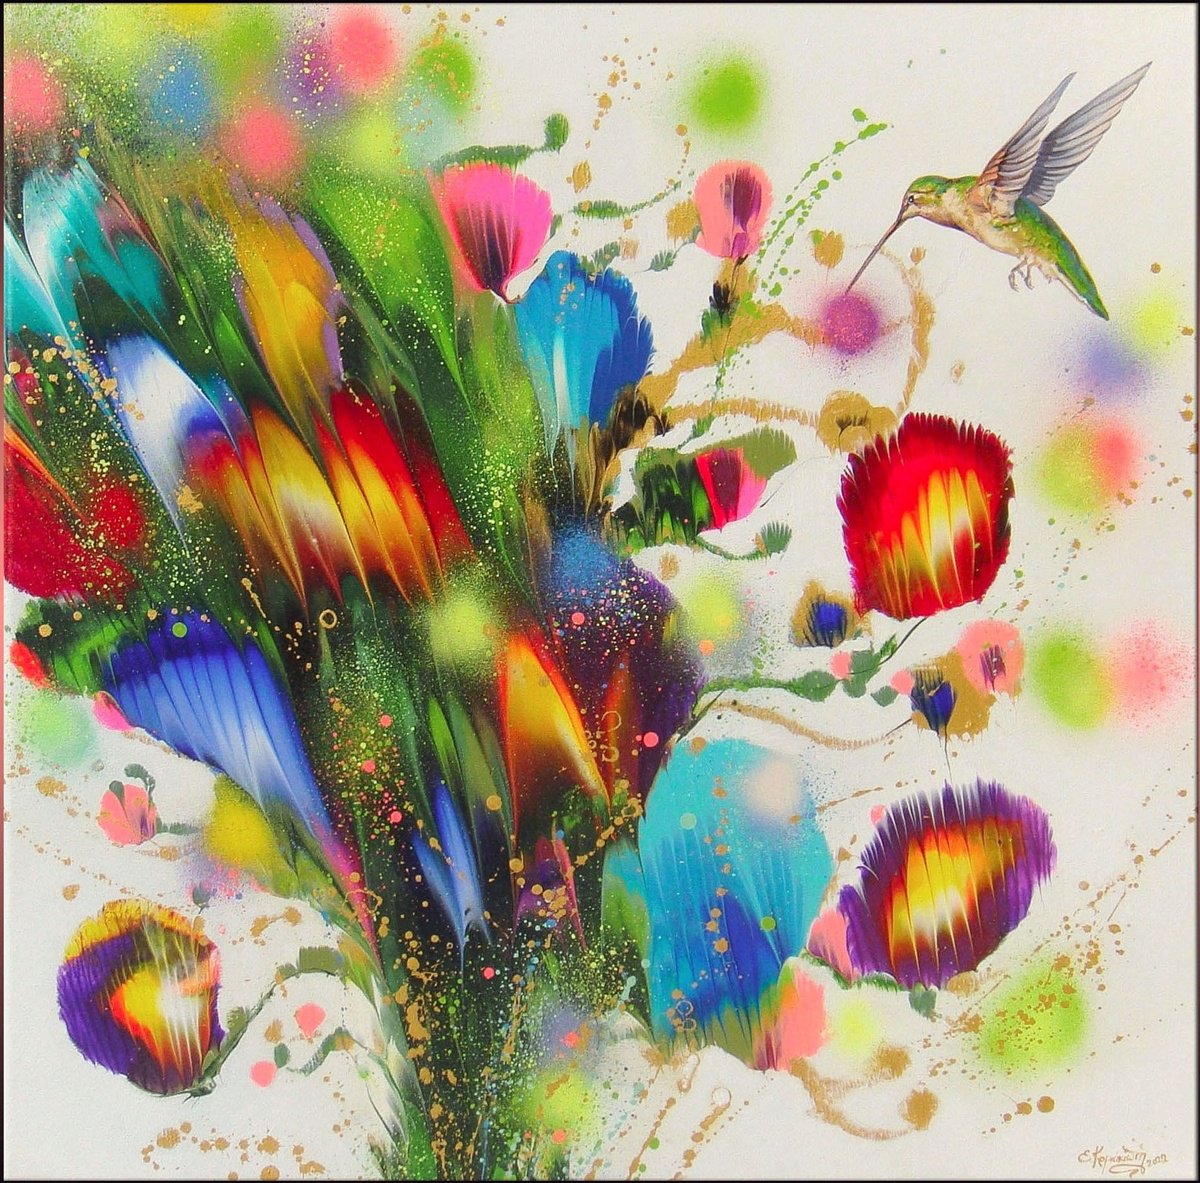 28.3" Flowers, Hummingbird "New Day" by Irini Karpikioti